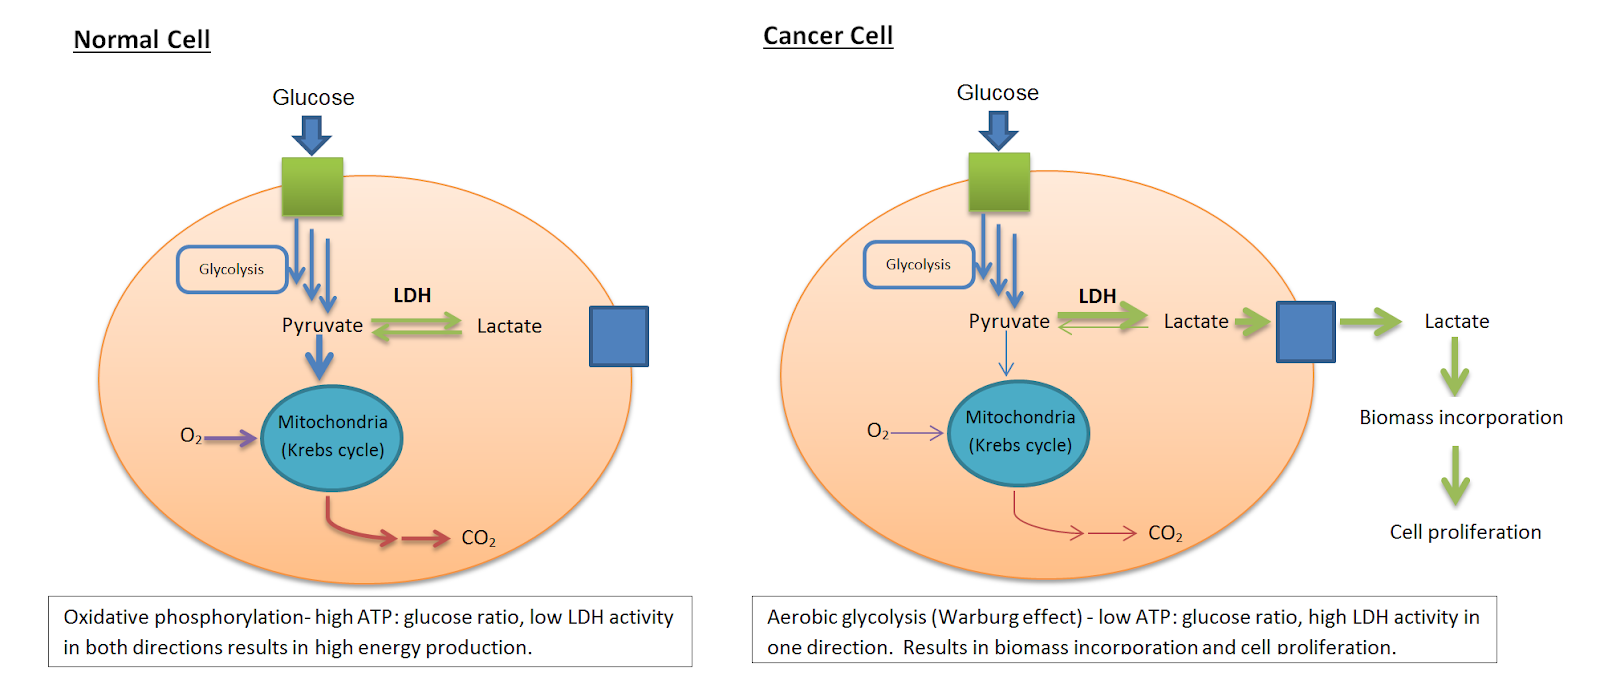 Отличия катаболизма раковой клетки от нормальной. 